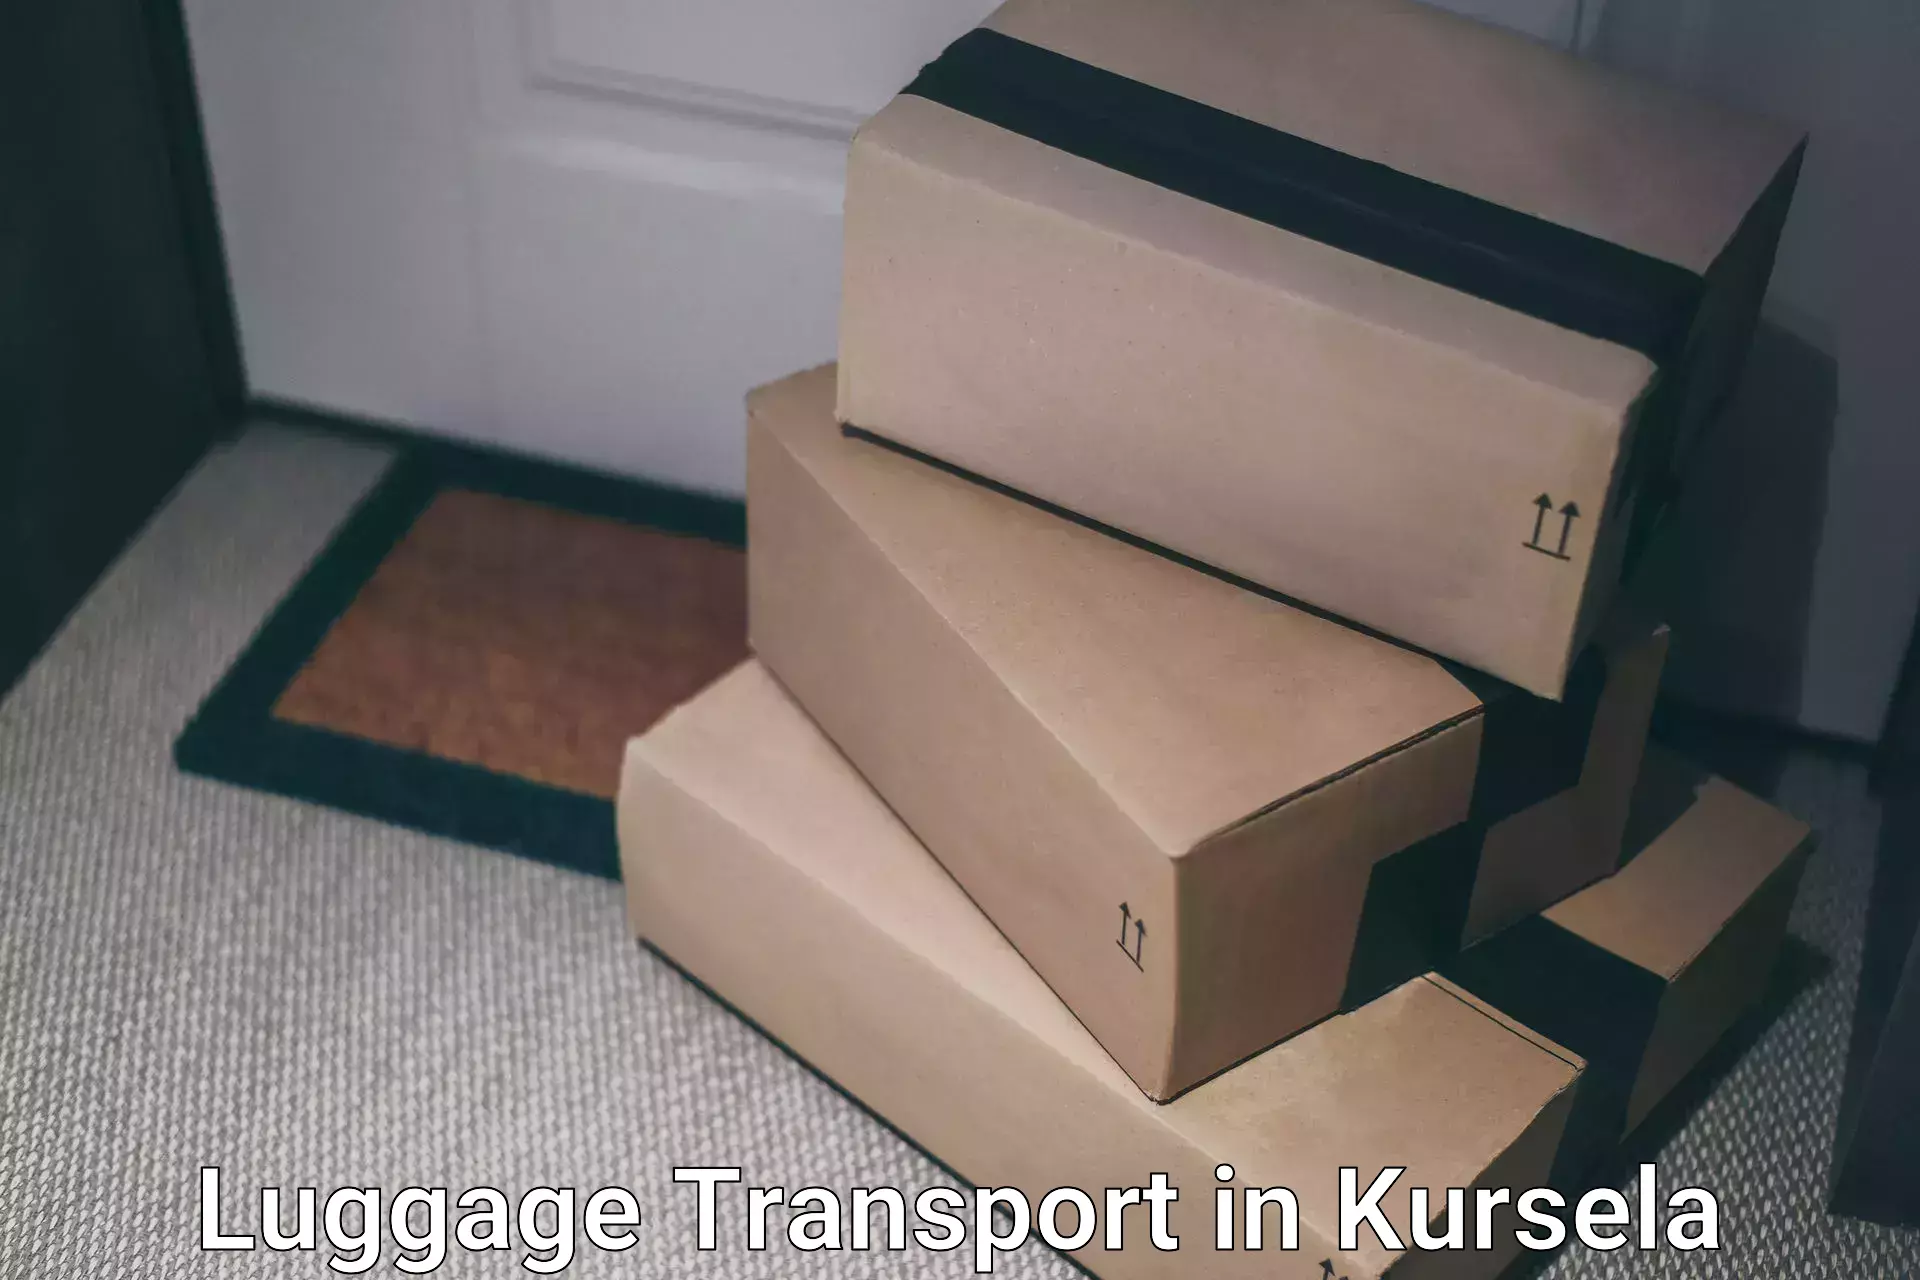 Luggage transit service in Kursela